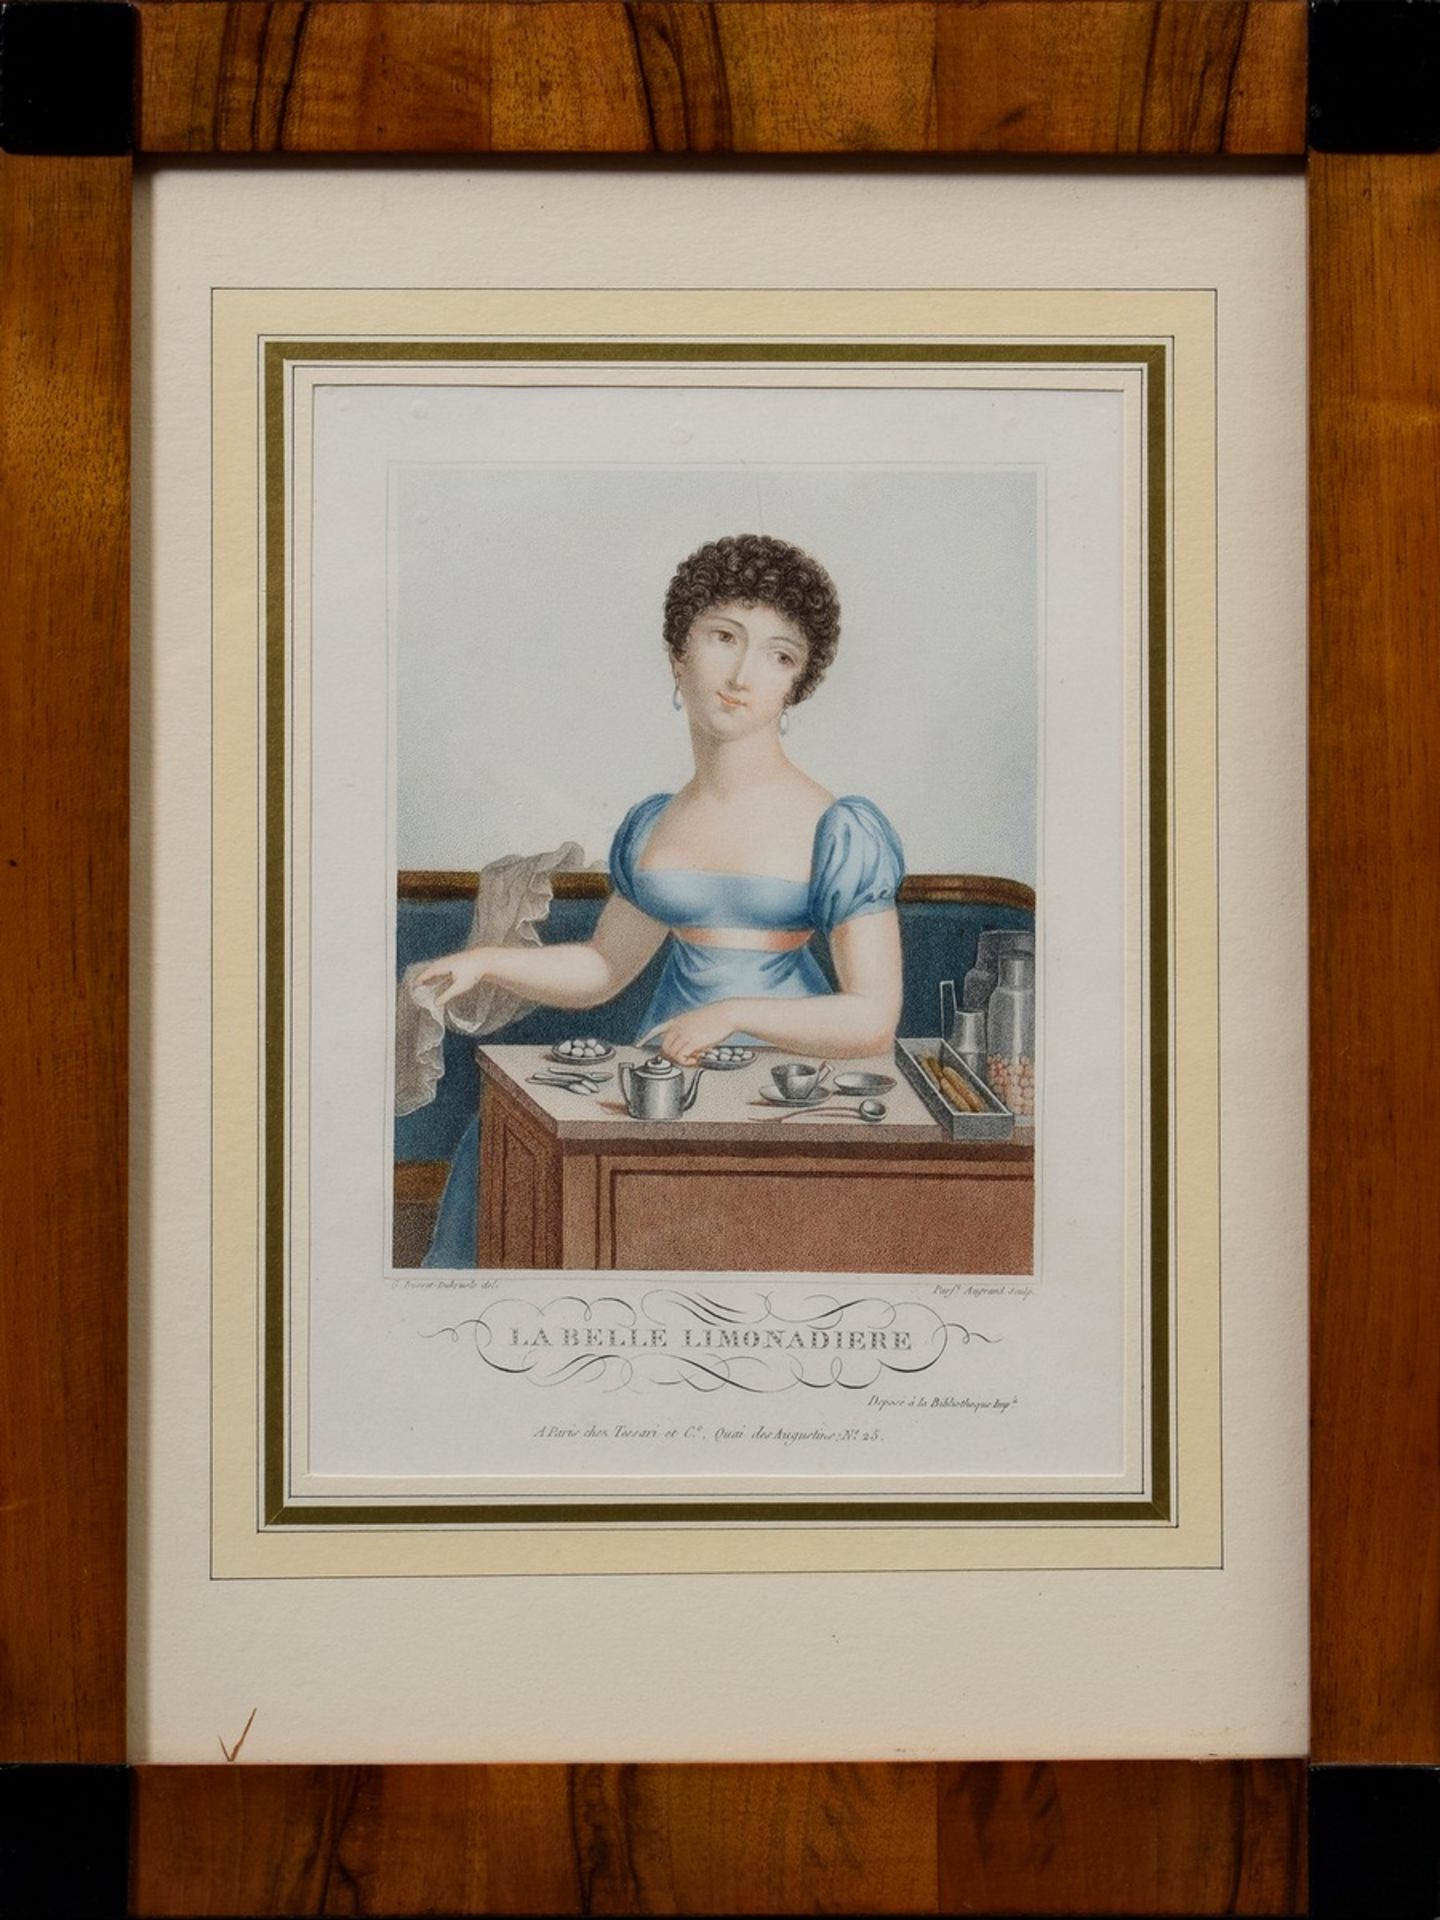 Augrand, Parfait (1782-?) "La belle Limonadiere" nach G. Busset-Dubrusle, Farbp